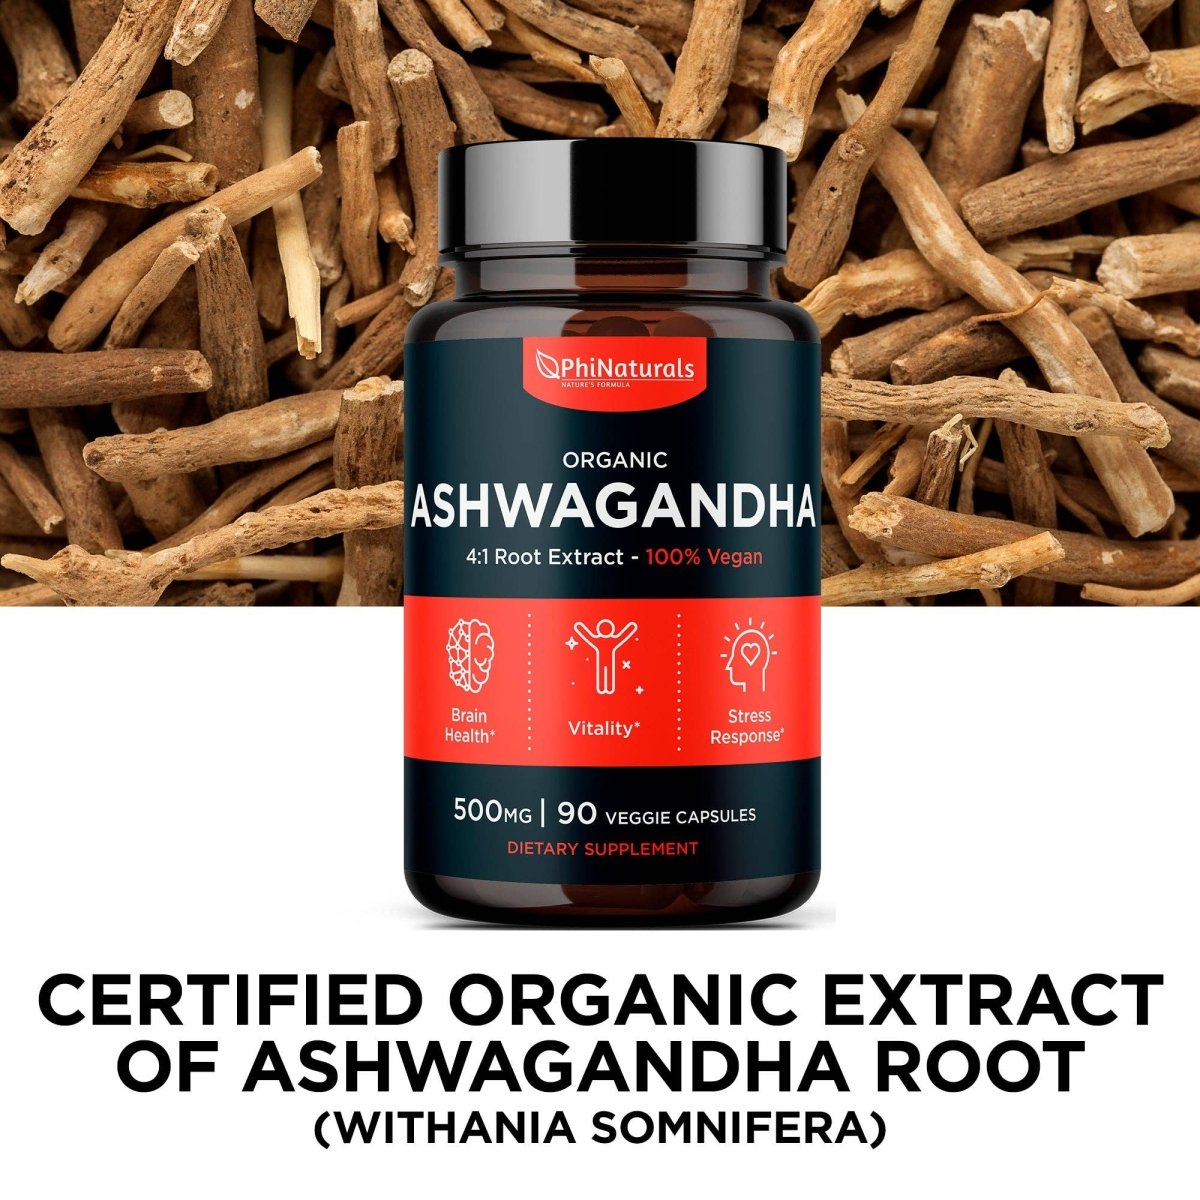 Ashwagandha Organic, 90 Vegetable Capsules - Spring Street Vitamins